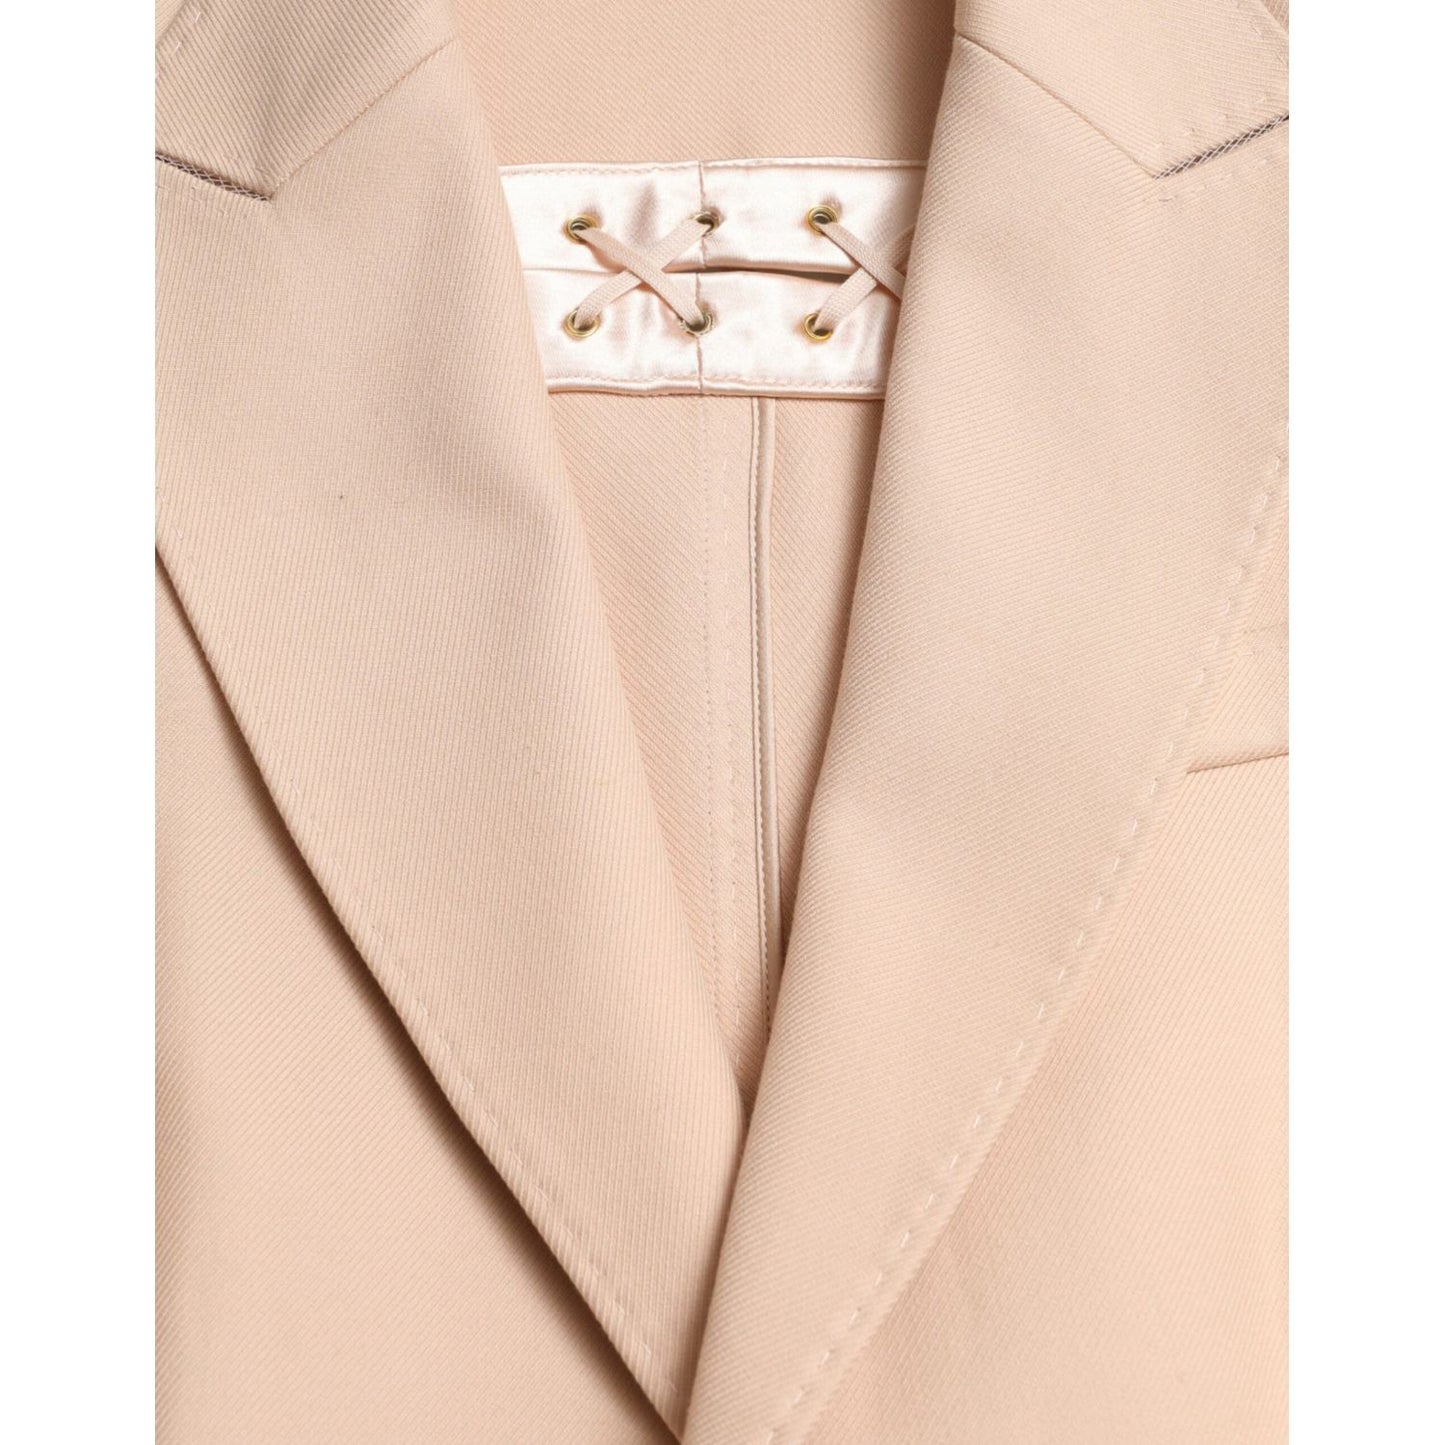 Dolce & Gabbana Elegant Beige Single-Breasted Trench Coat beige-cotton-single-breasted-long-coat-jacket 465A9172-BG-scaled-a89e3ecc-c2d.jpg